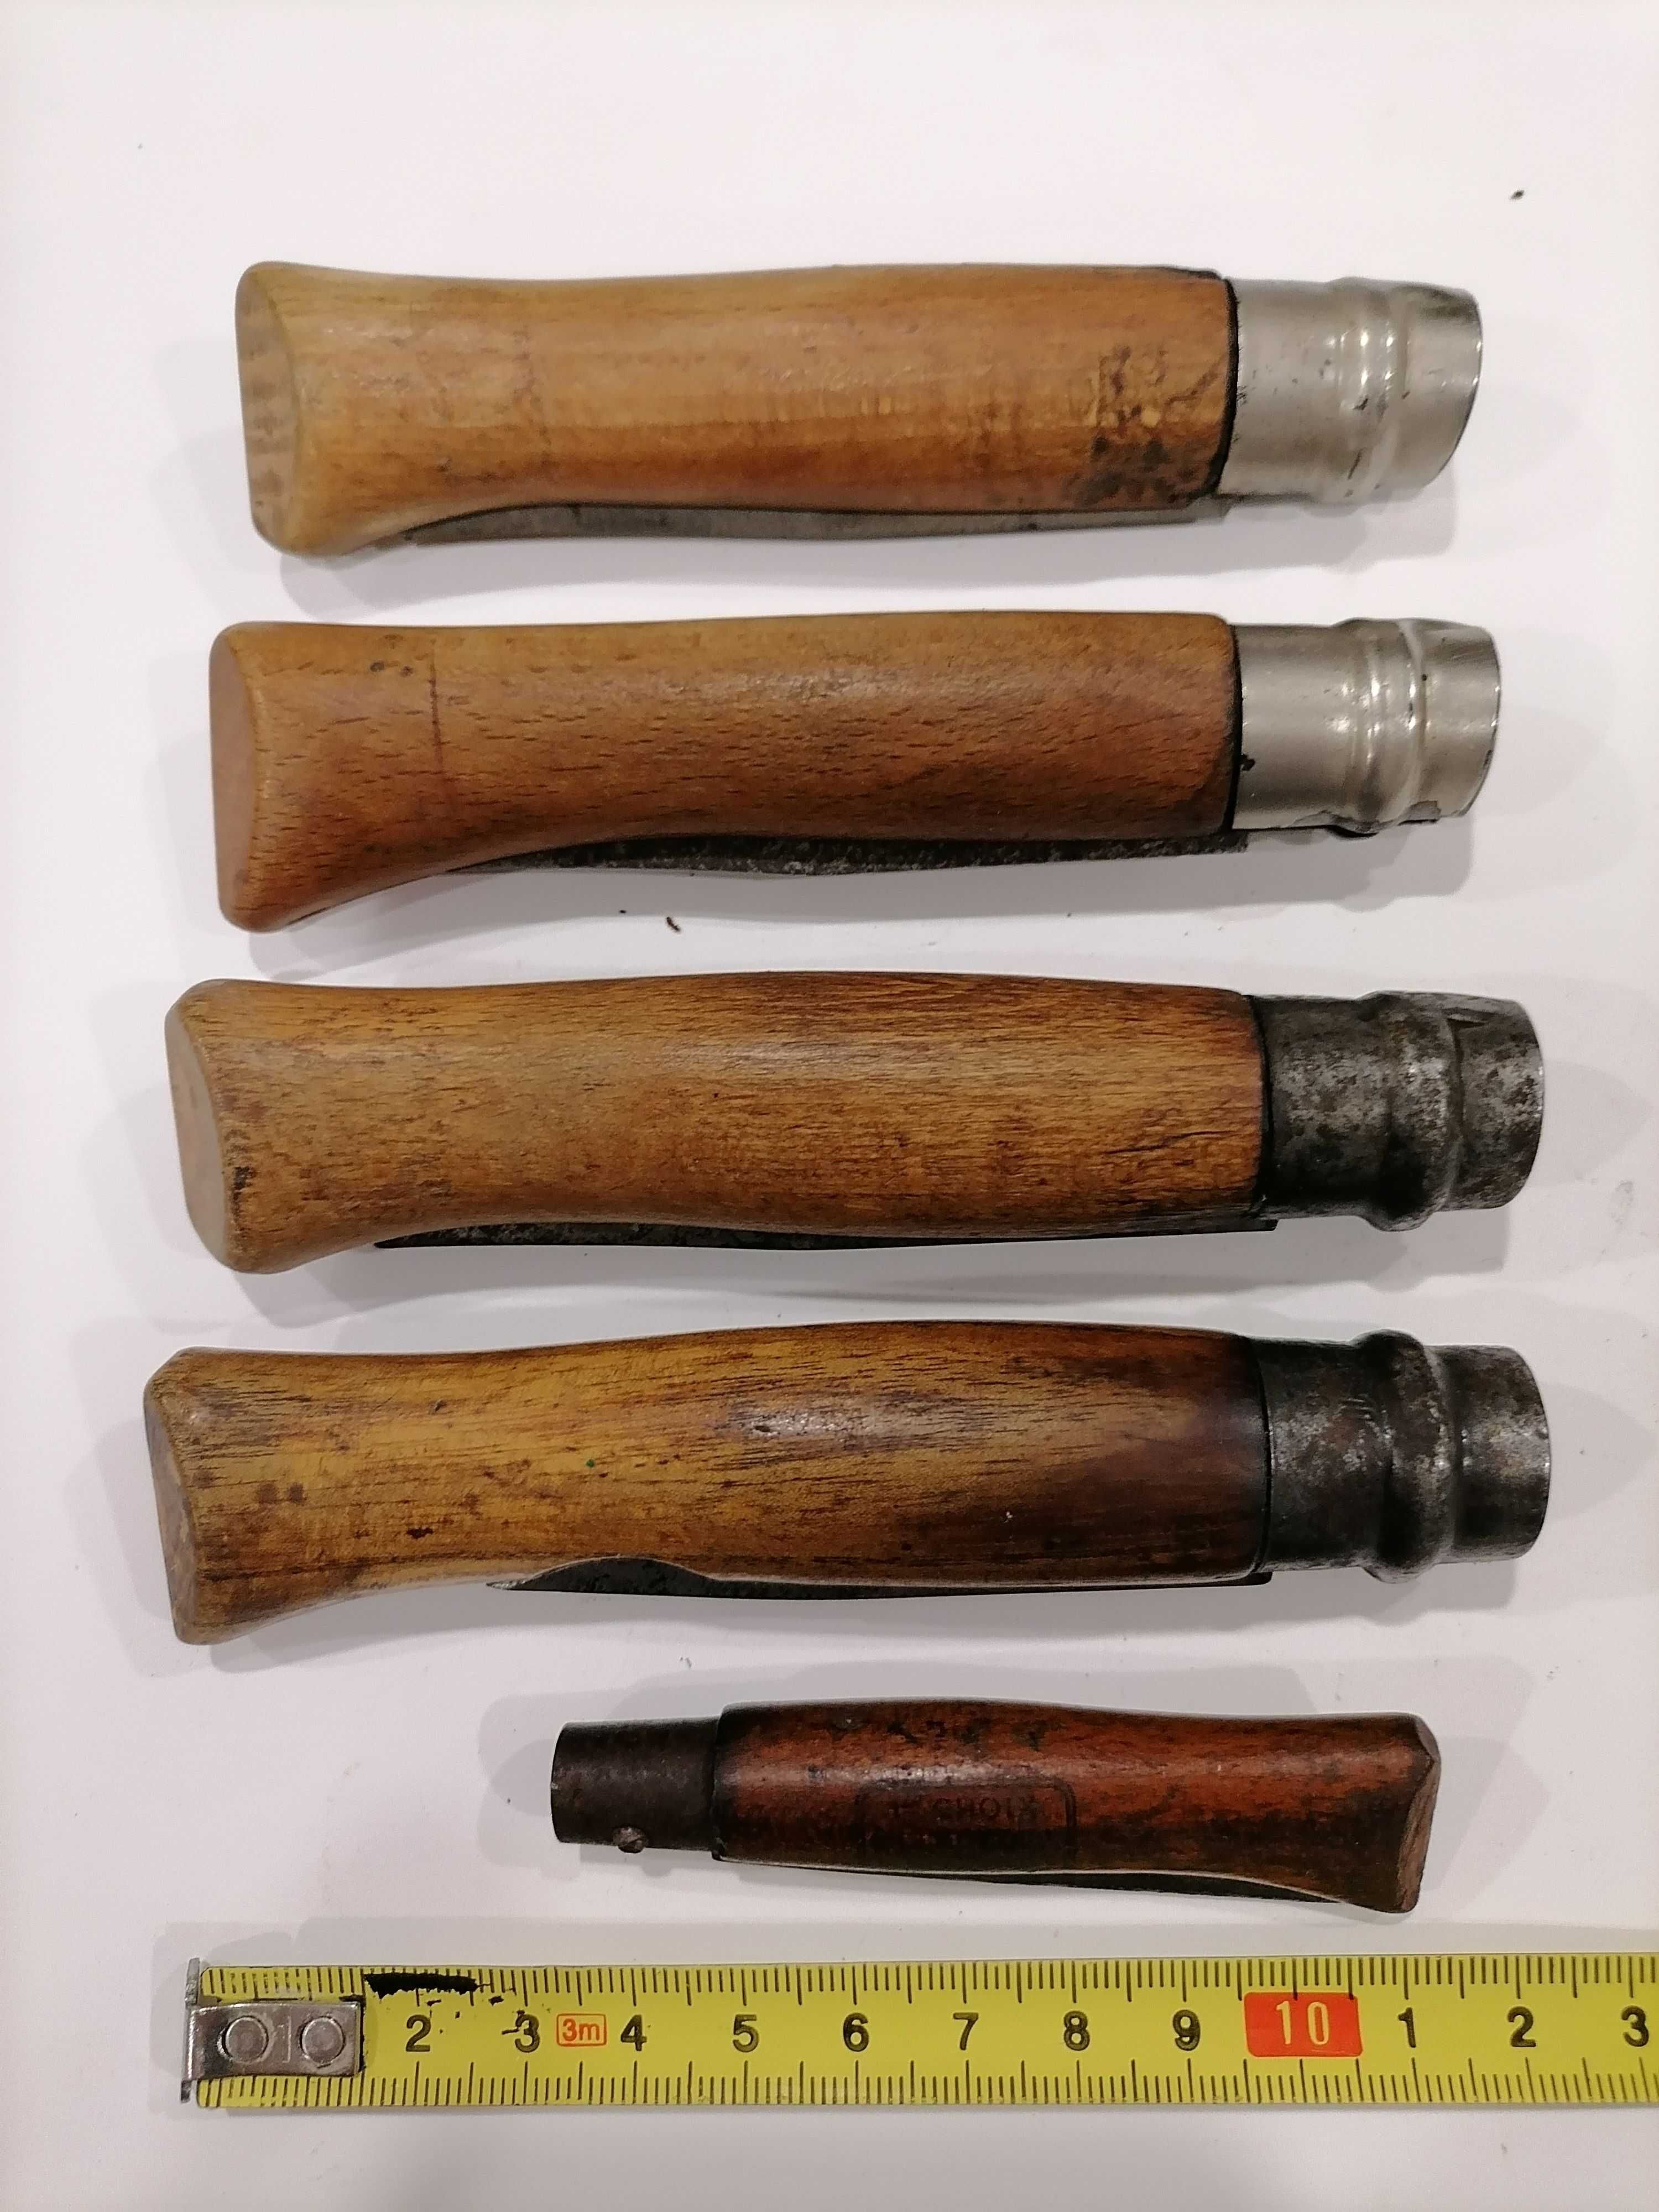 Lote 5 canivetes coleção-Opinel "main couronné"c/virola-Preço Conjunto